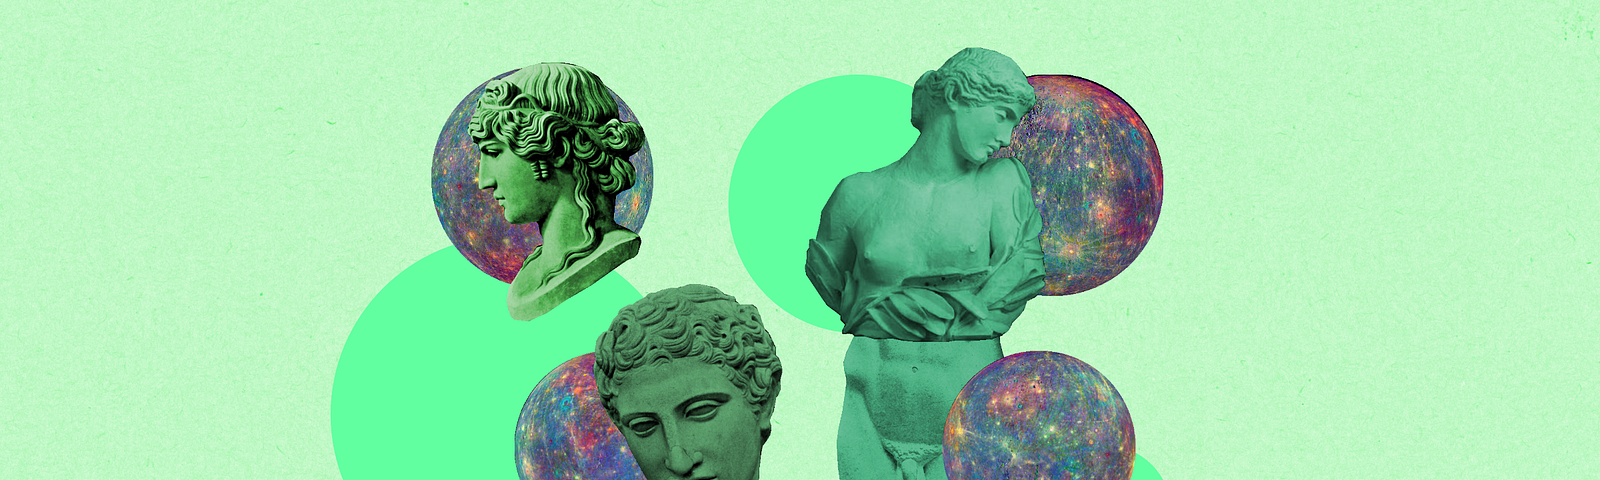 Figuras que remetem à esculturas da Grécia Antiga junto com imagens de planetas. O fundo da imagem é verde claro.